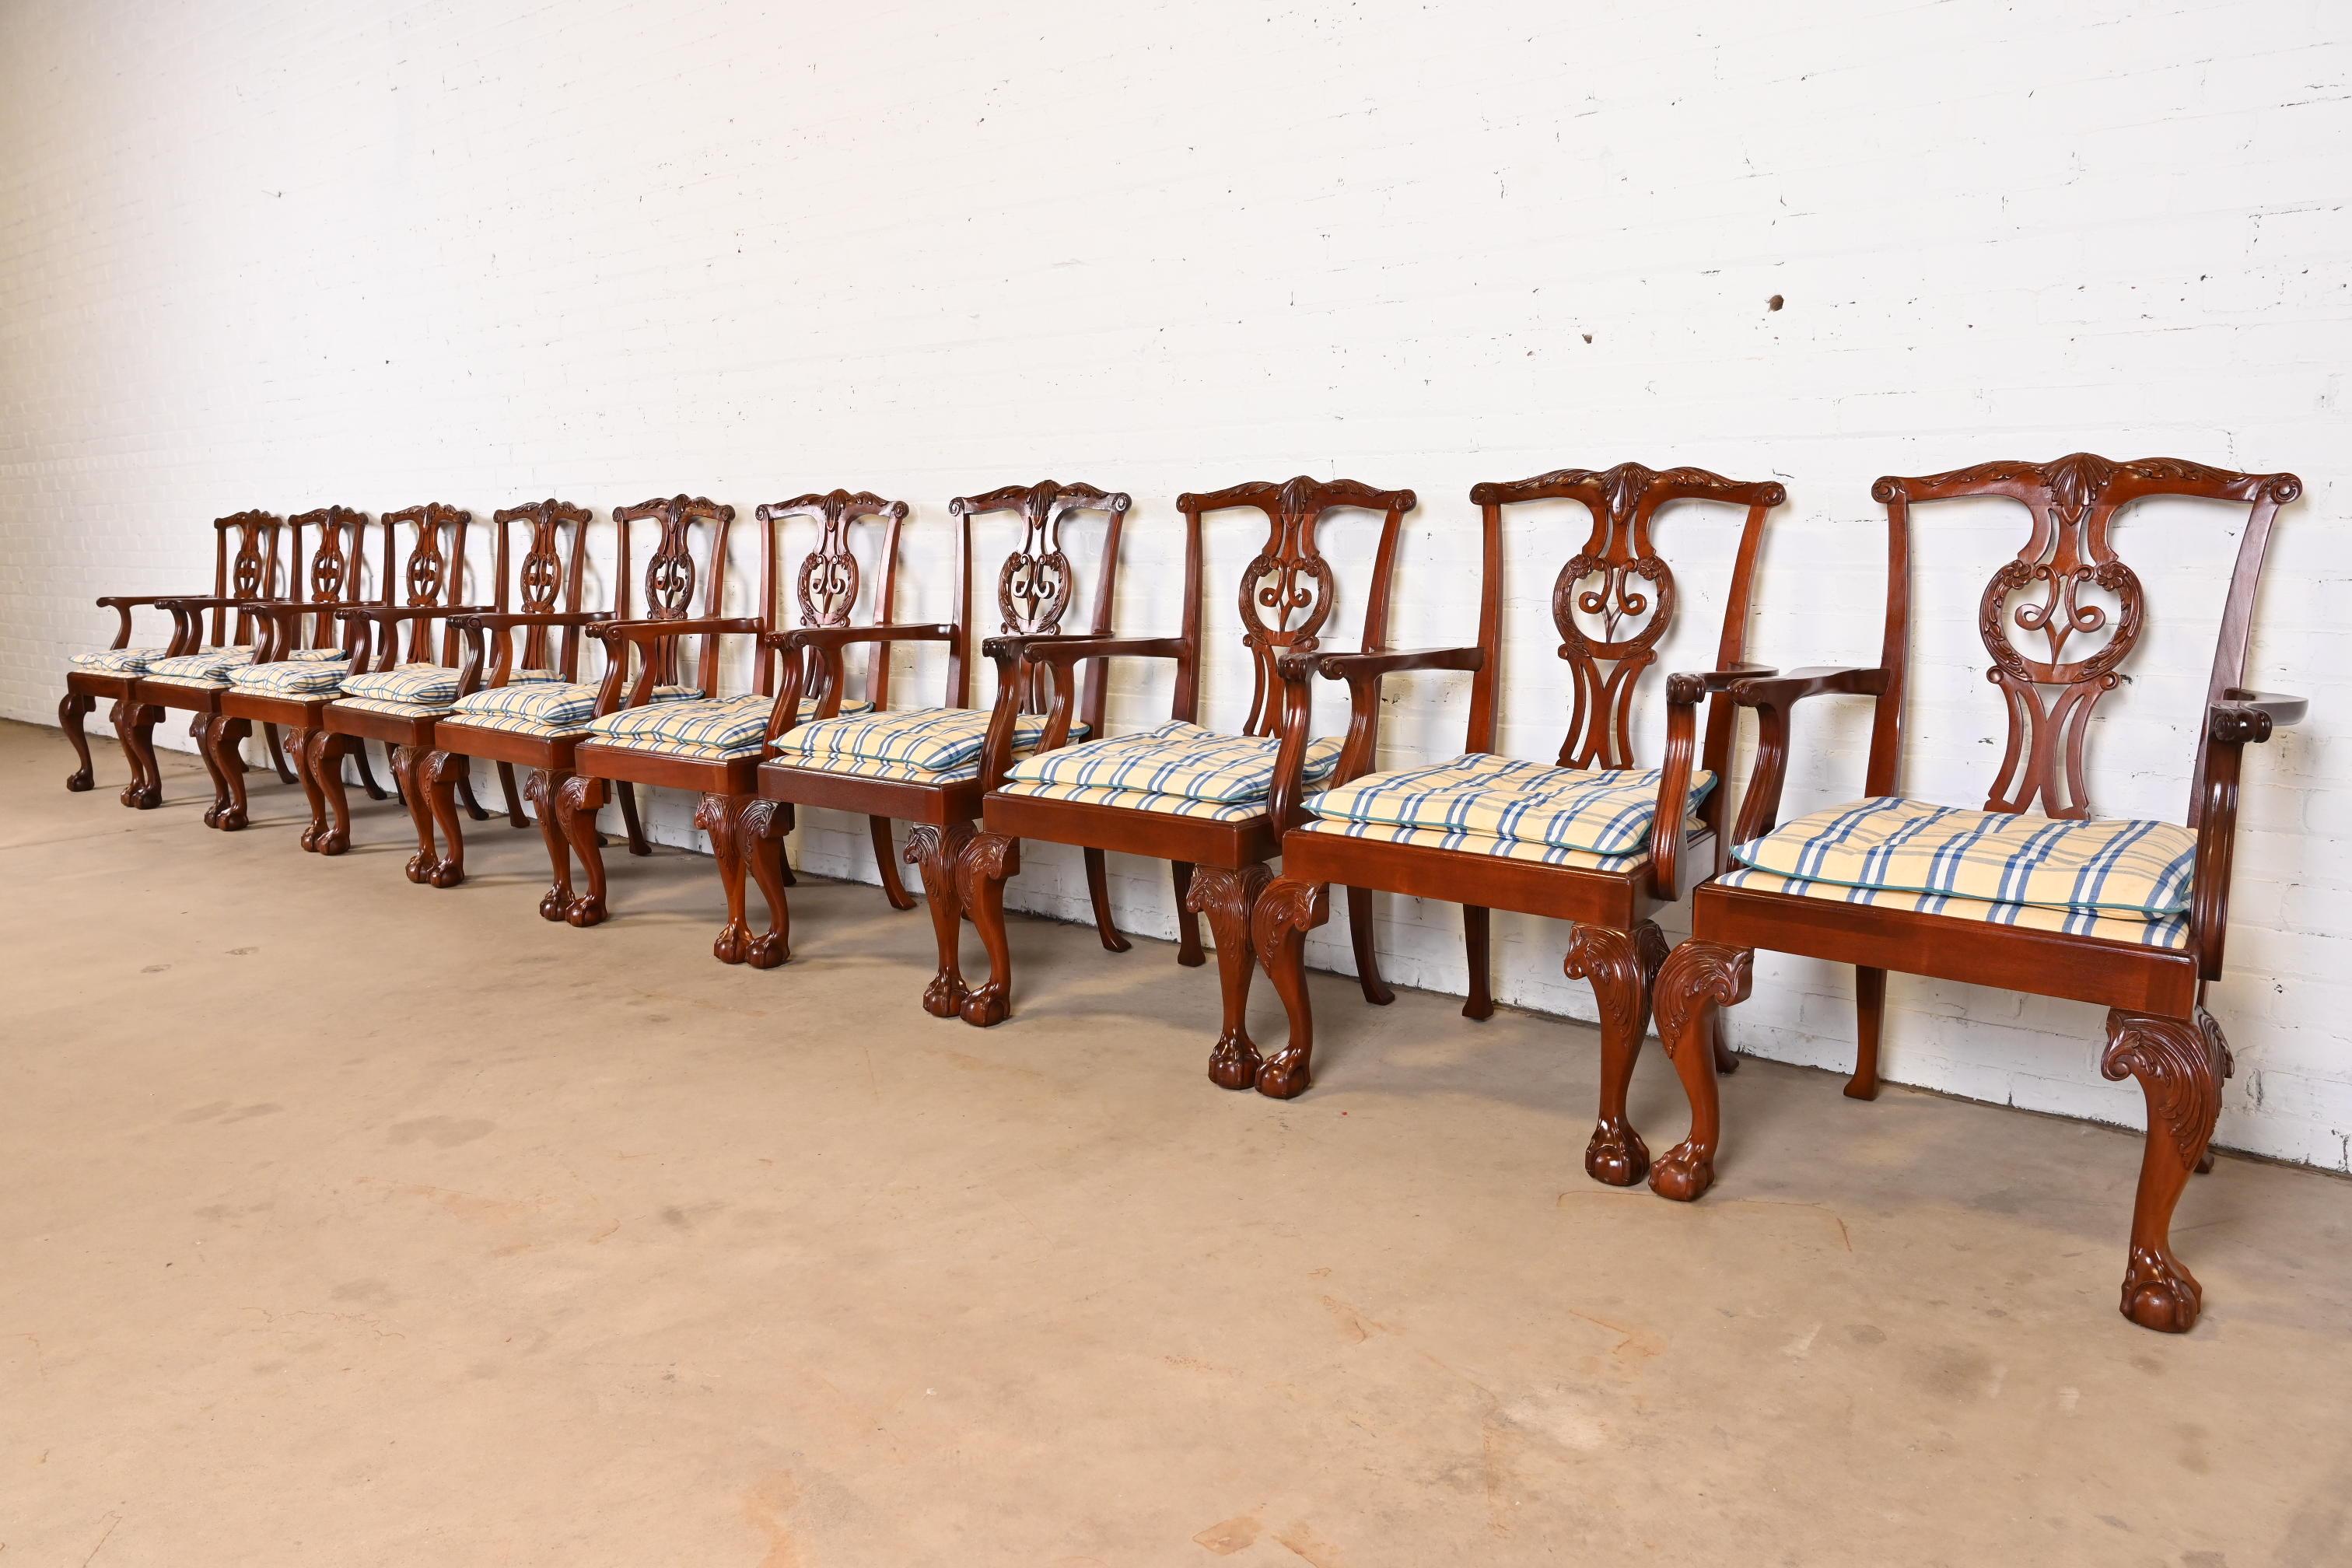 Un ensemble exceptionnel de dix fauteuils de salle à manger de style Chippendale ou géorgien

Par Baker Furniture

États-Unis, vers les années 1980

Cadre en acajou massif sculpté, avec pieds cabriole et pieds boule et griffe, et tapisserie